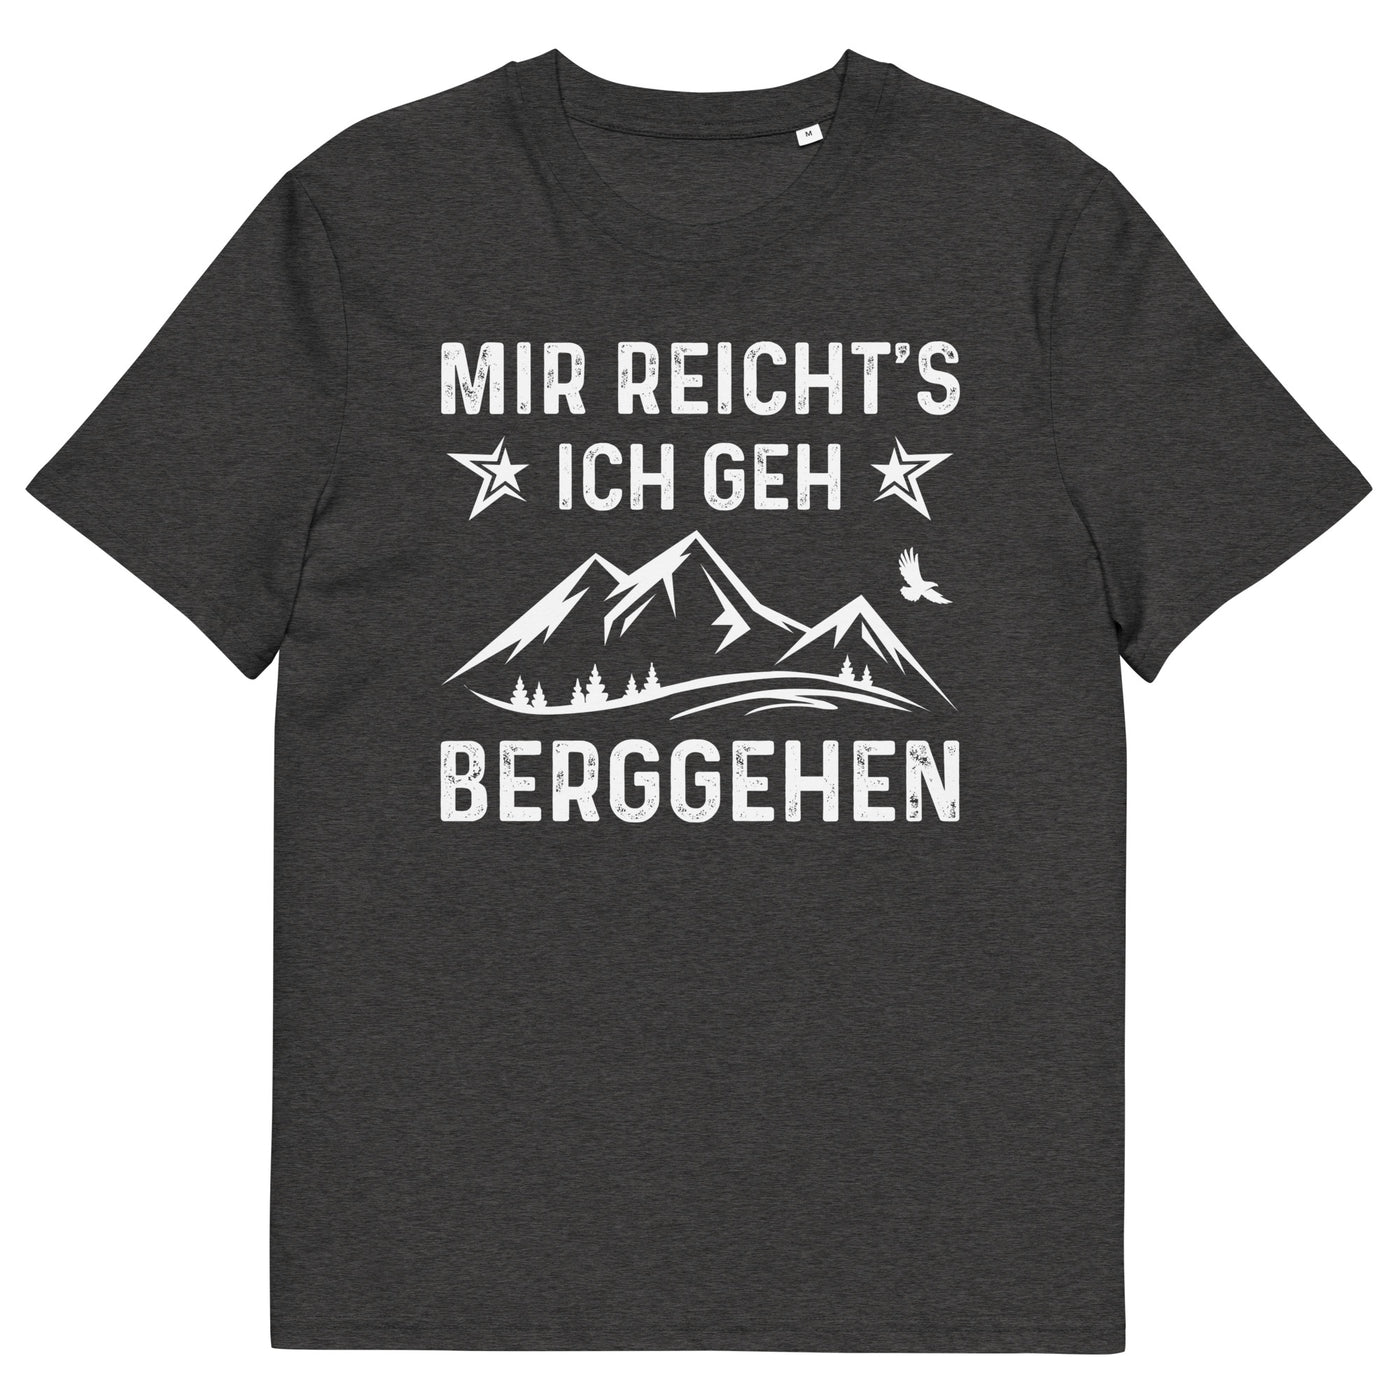 Mir Reicht's Ich Gen Berggehen - Herren Premium Organic T-Shirt berge xxx yyy zzz Dark Heather Grey